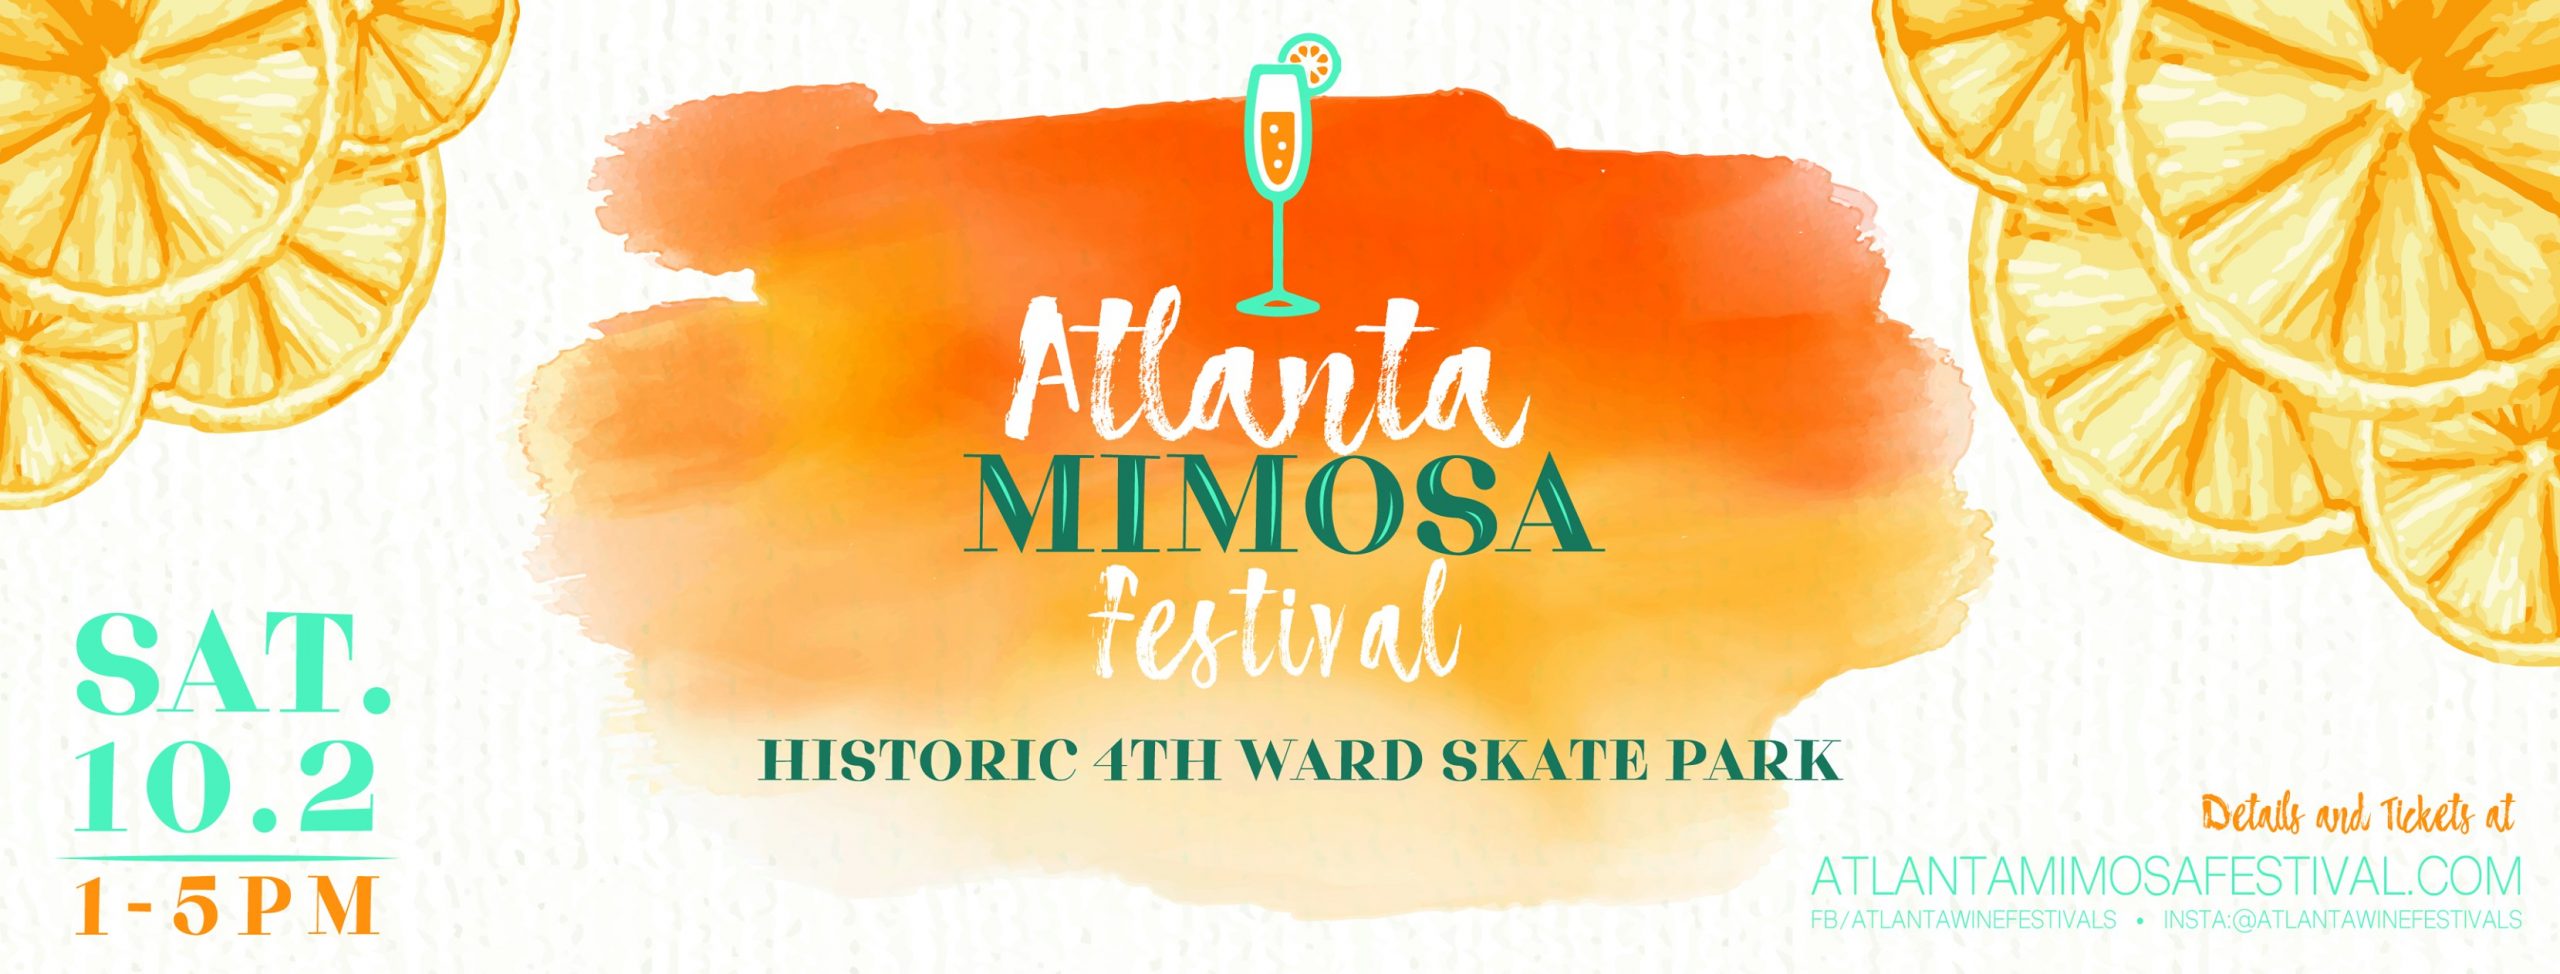 Atlanta Mimosa Festival Butter.ATL